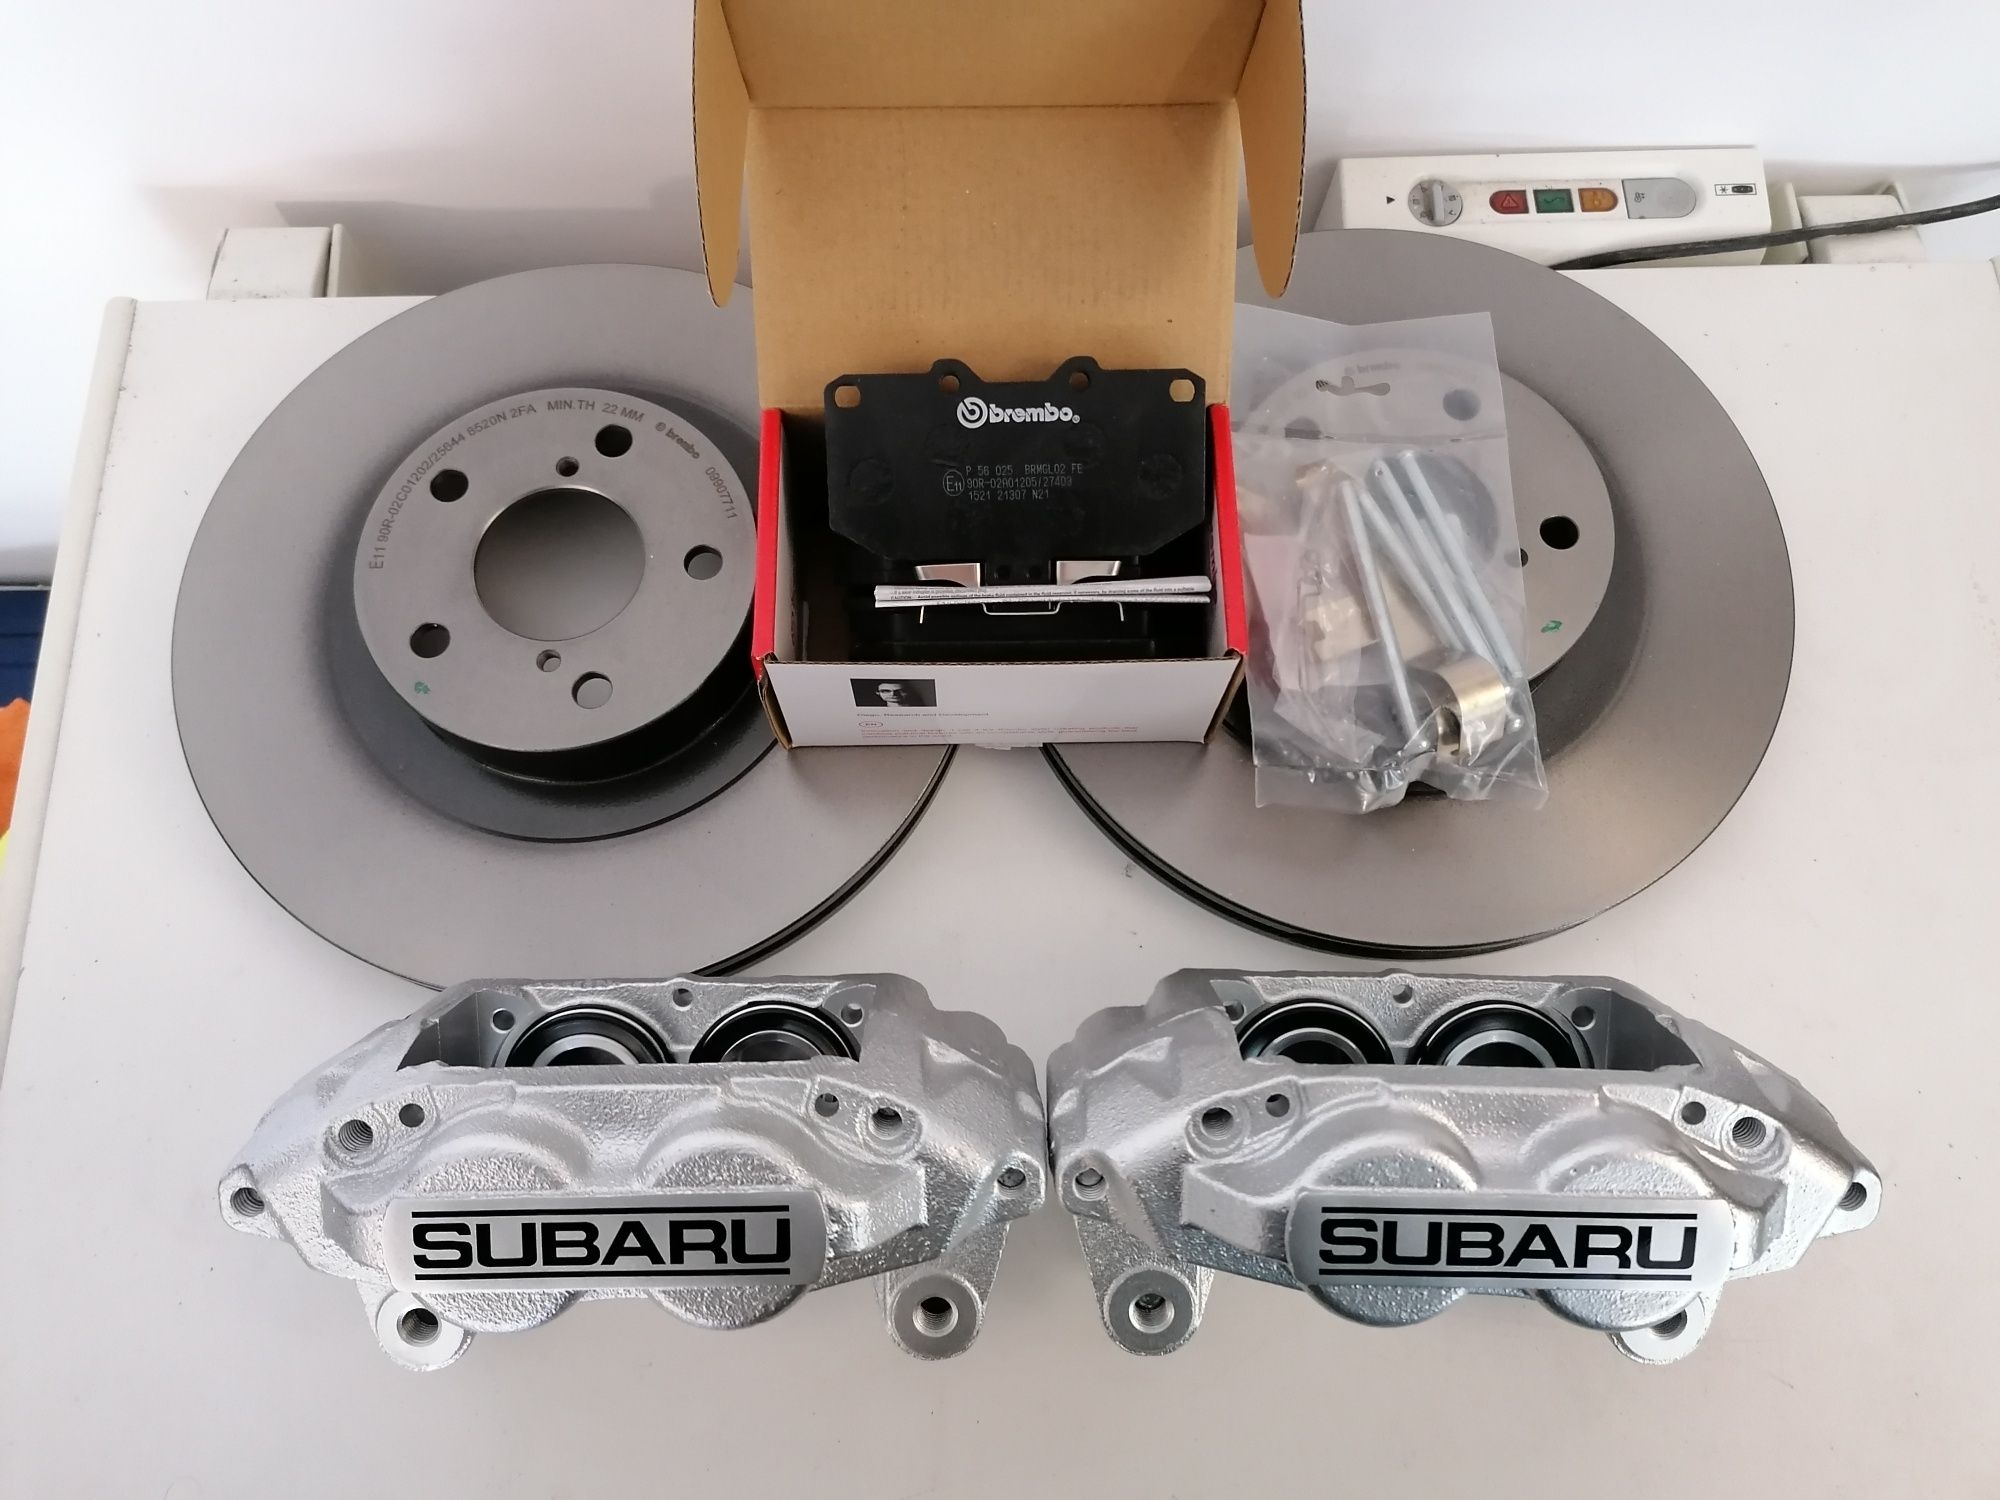 Zaciski 4-tłoczkowe Subaru Impreza WRX/GT Forester tarcze i klocki